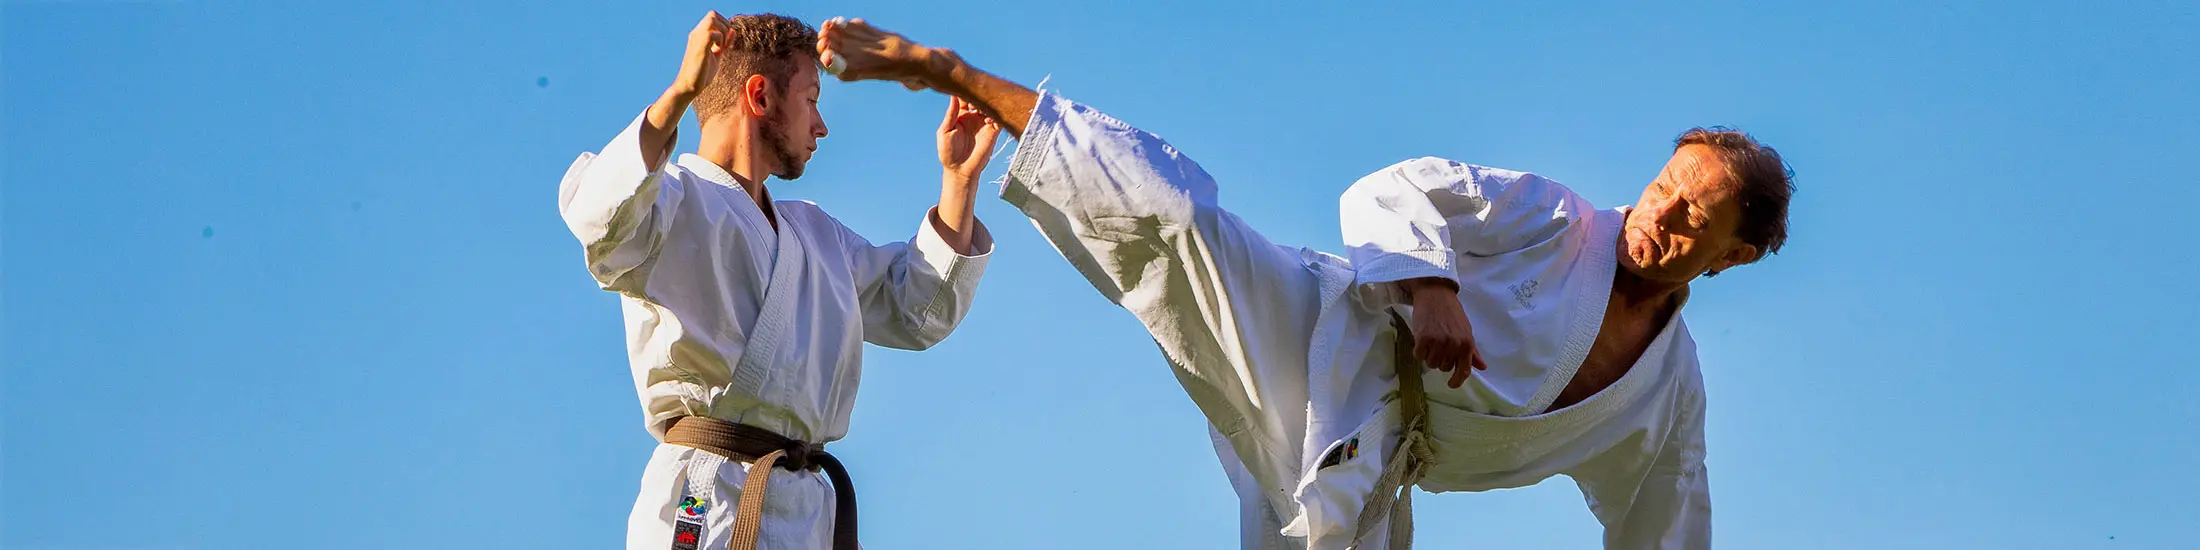 Karate mit Jung und Alt